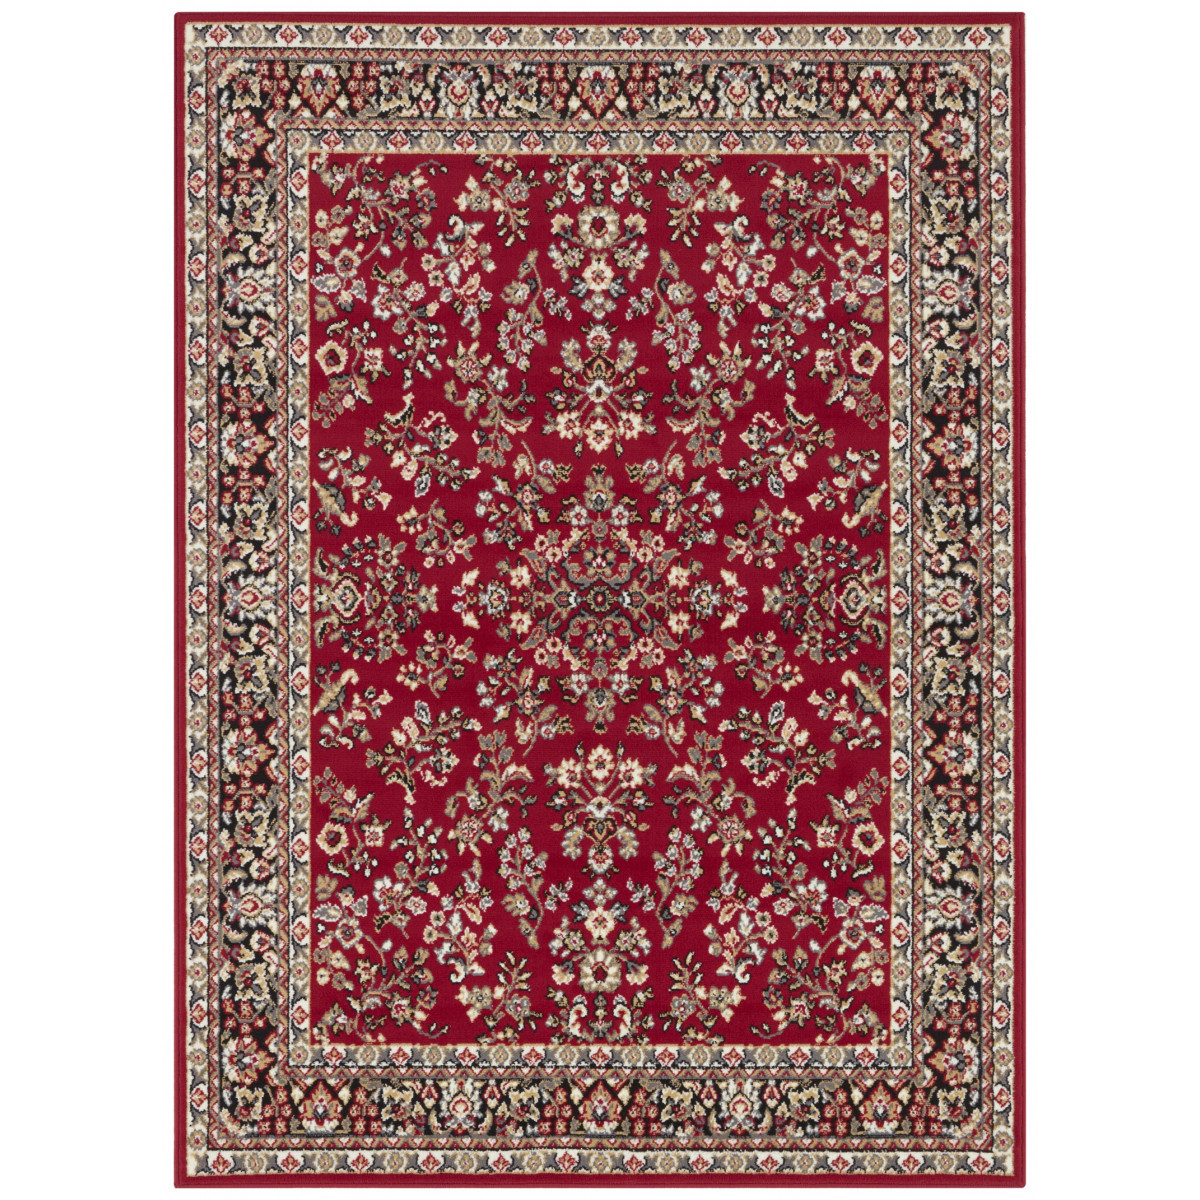 AKCE: 120x160 cm Kusový orientální koberec Mujkoberec Original 104352